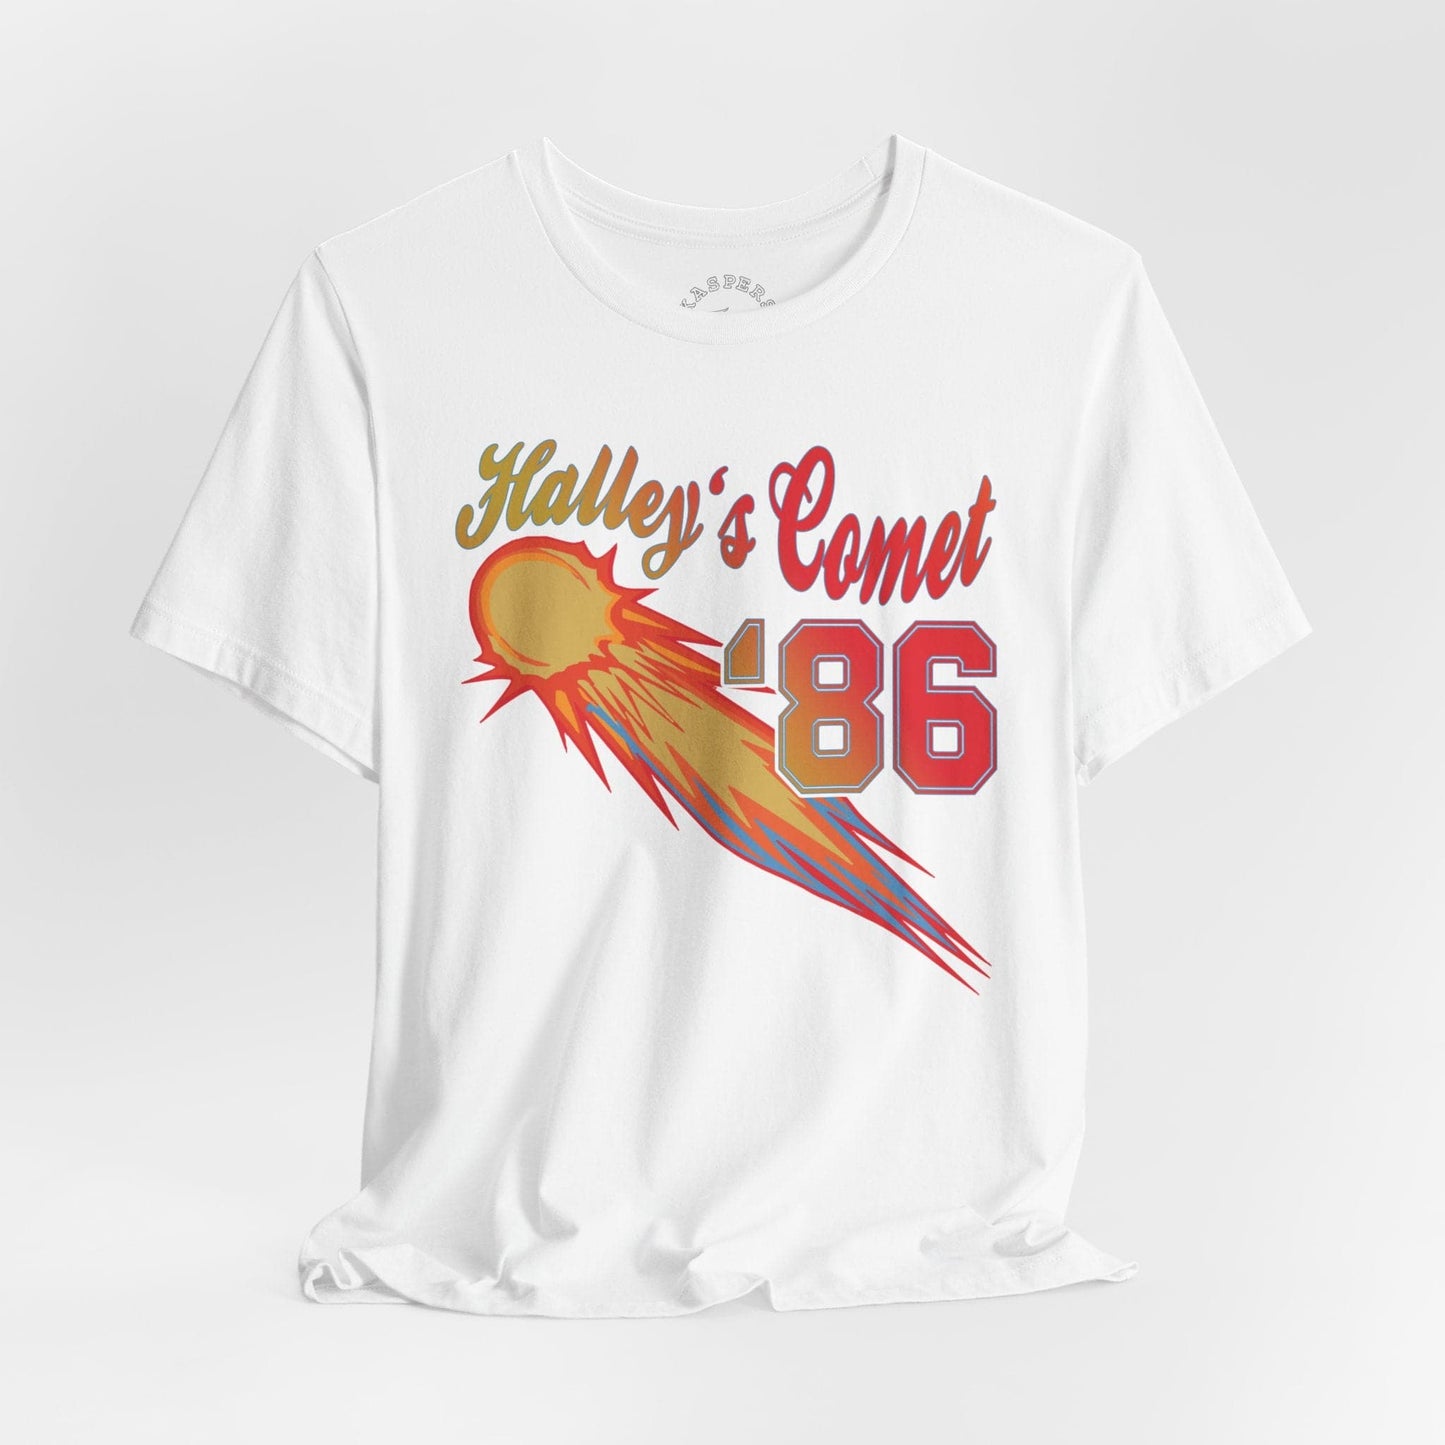 Halley's Comet '86 T-Shirt